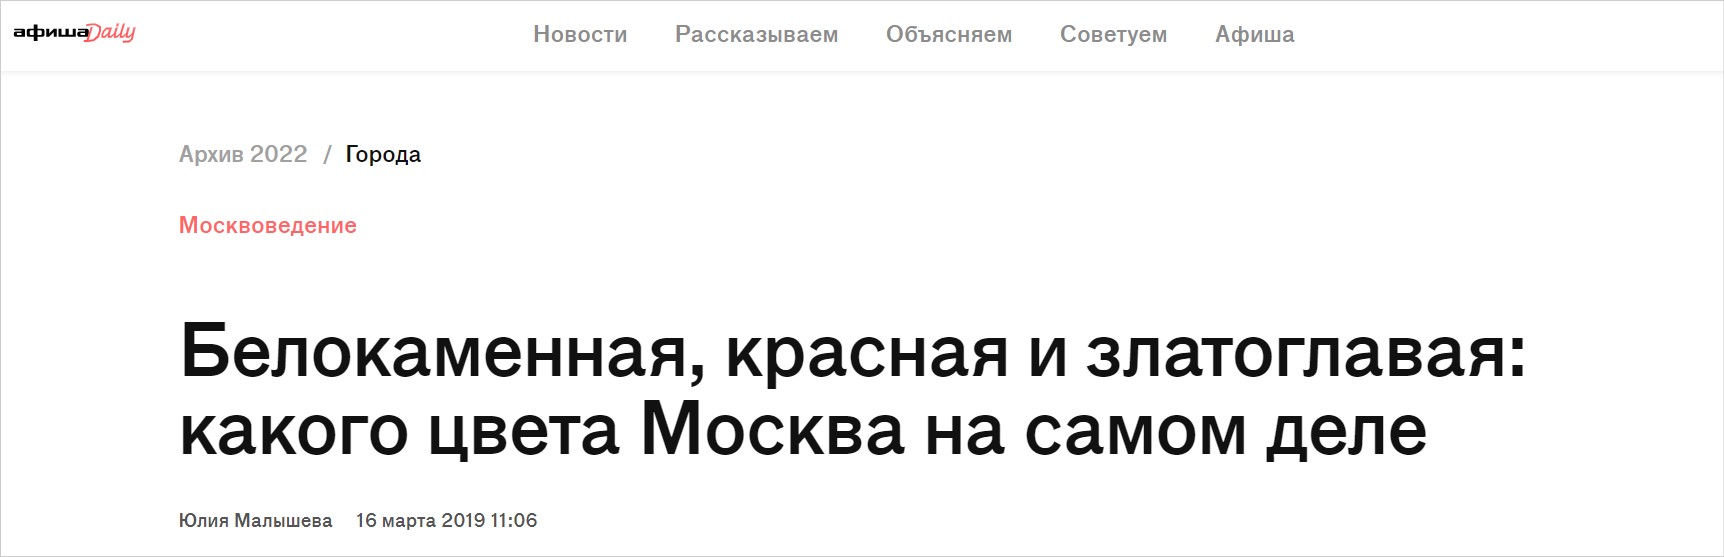 Заголовок статьи в Афише Какого цвета Москва